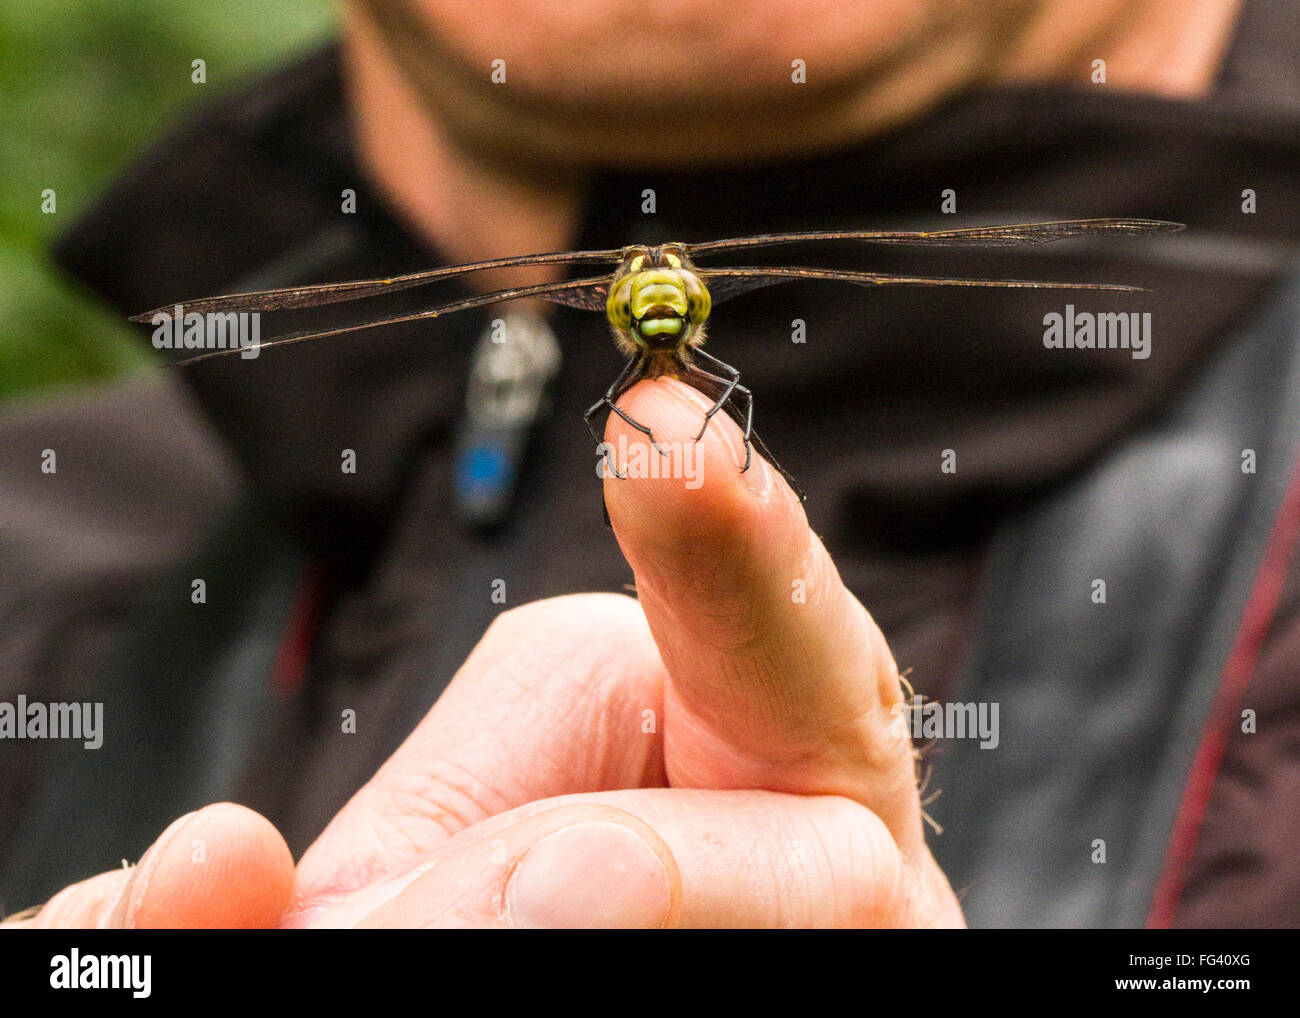 La interacción humana y la vida silvestre, un hawker dragonfly sentado sobre un hombre, dedo. Breve visita, momento fugaz, viviendo con la vida silvestre. Foto de stock